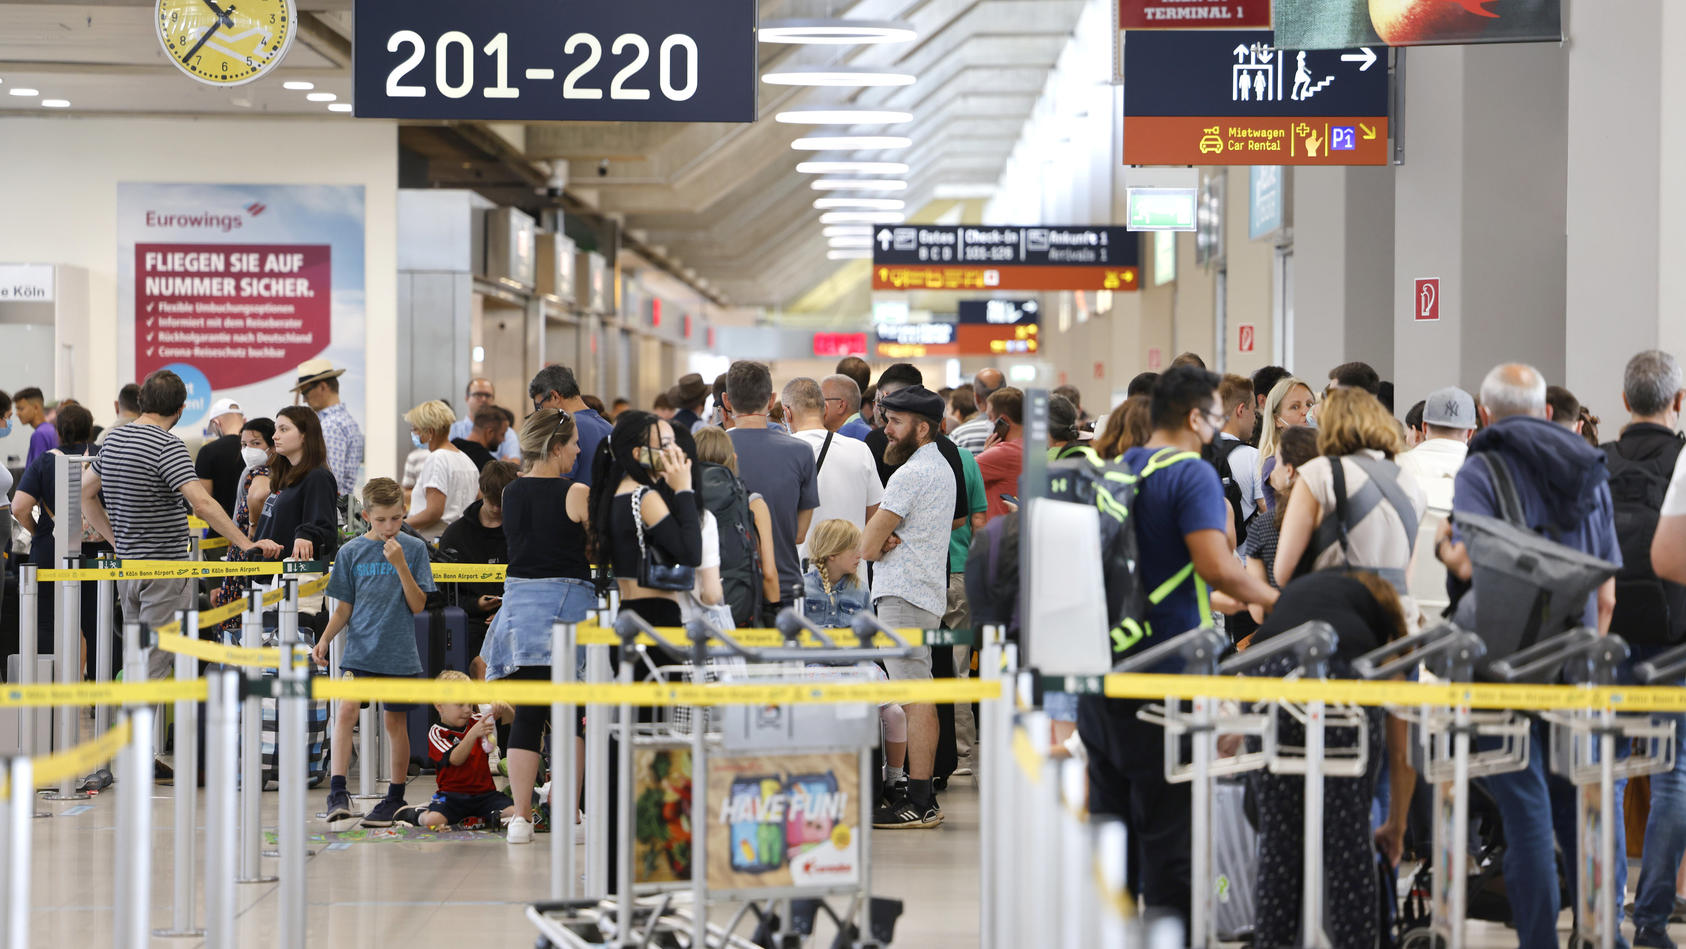 Sicherheitskontrollen-Termin - Wie Sie Wartezeiten an Flughäfen einfach umgehen können